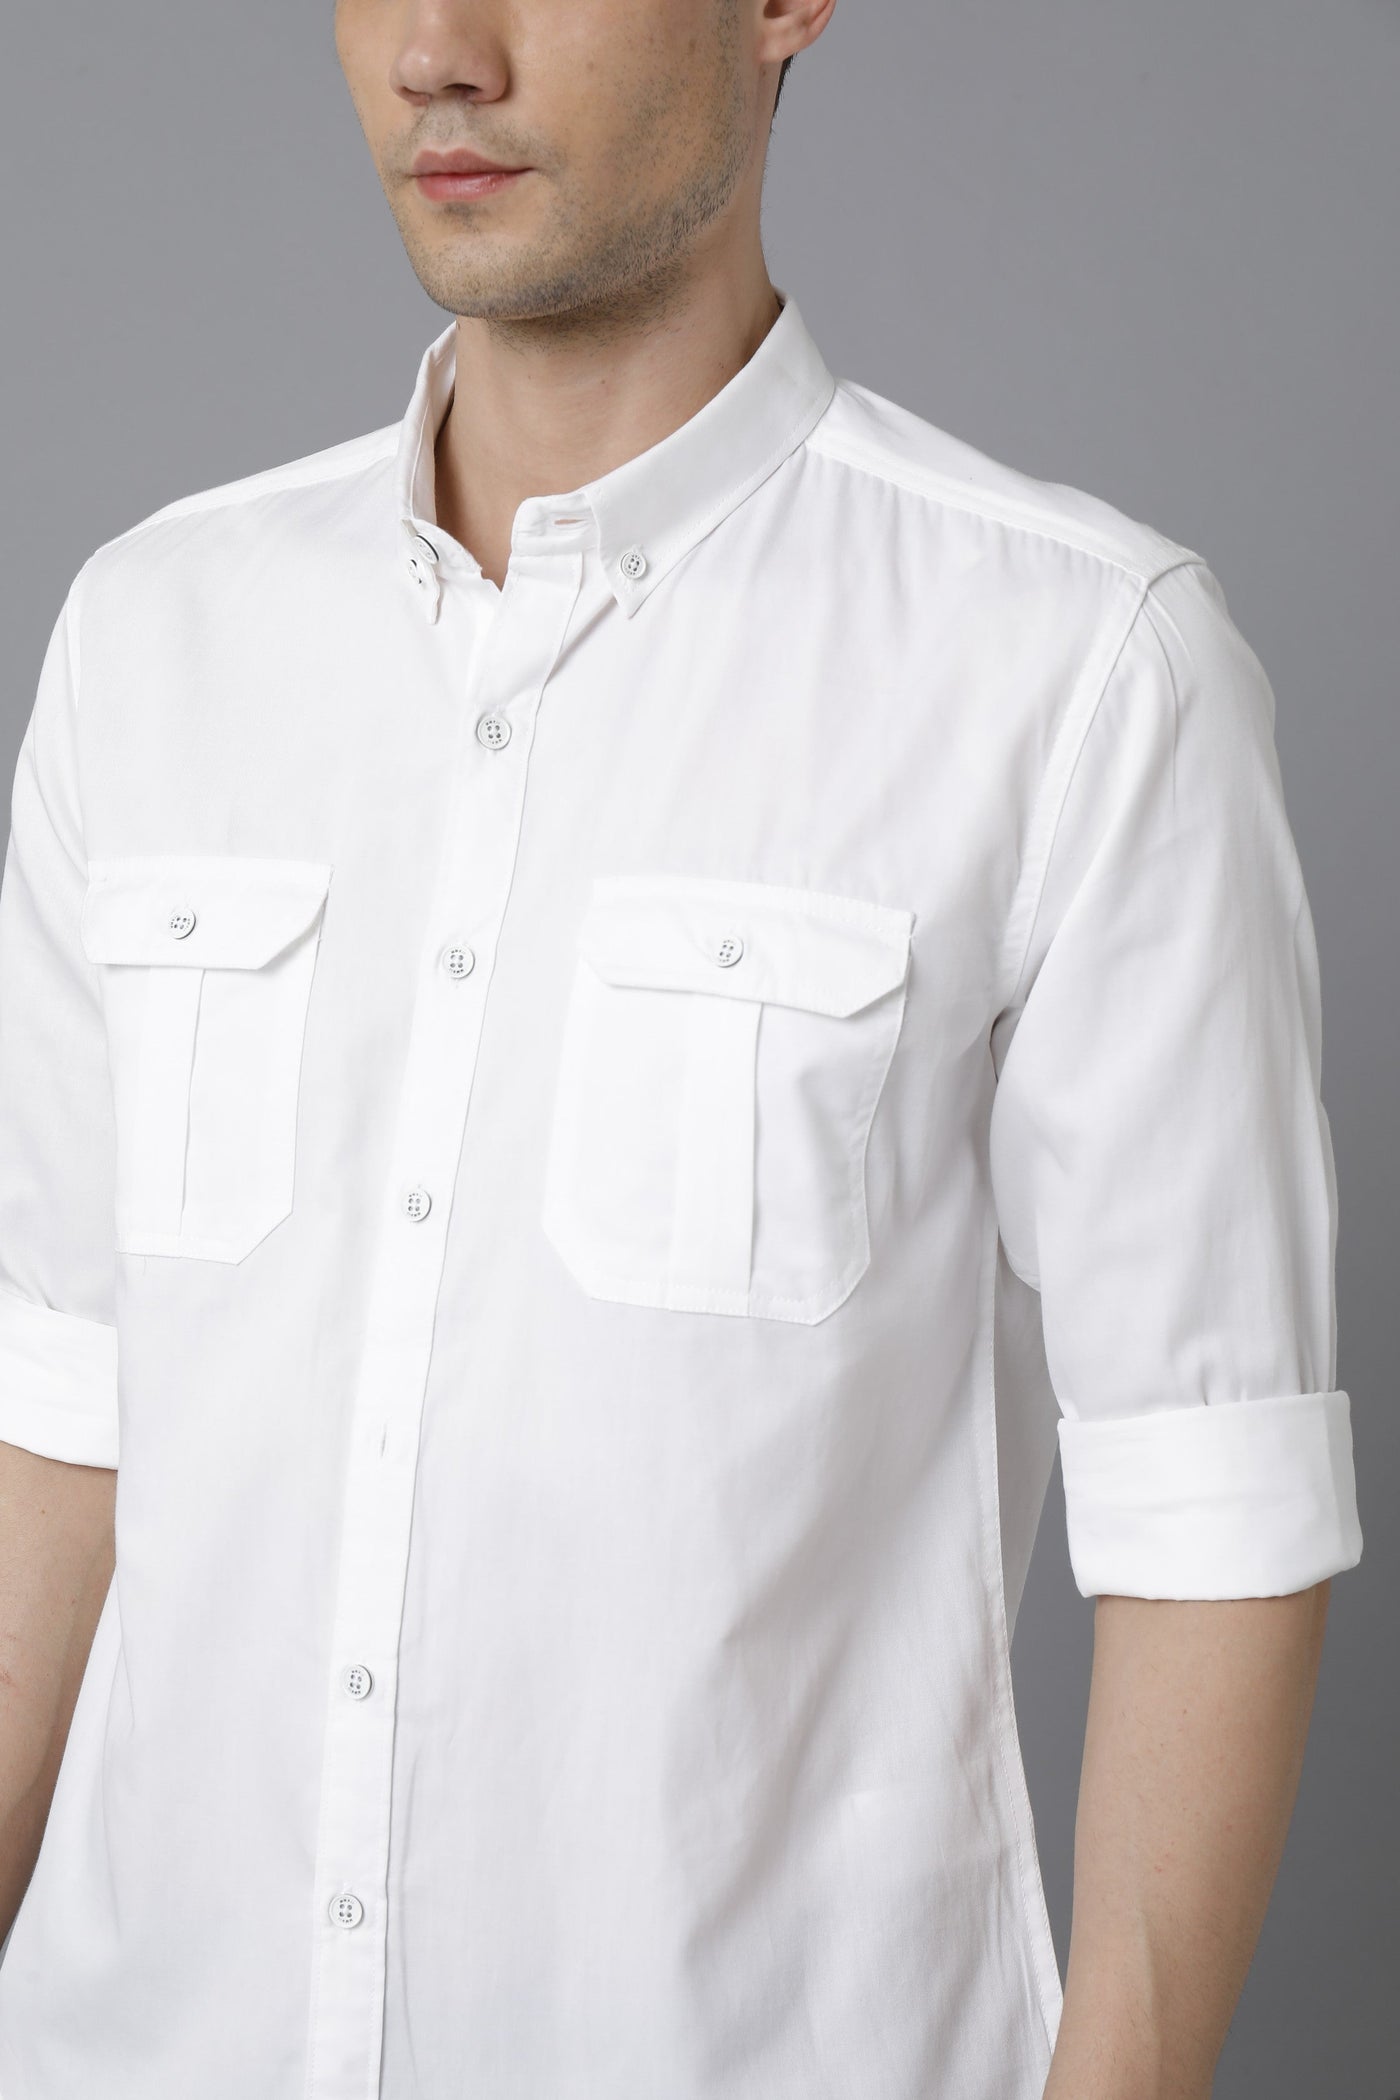 Double pocket white shirts